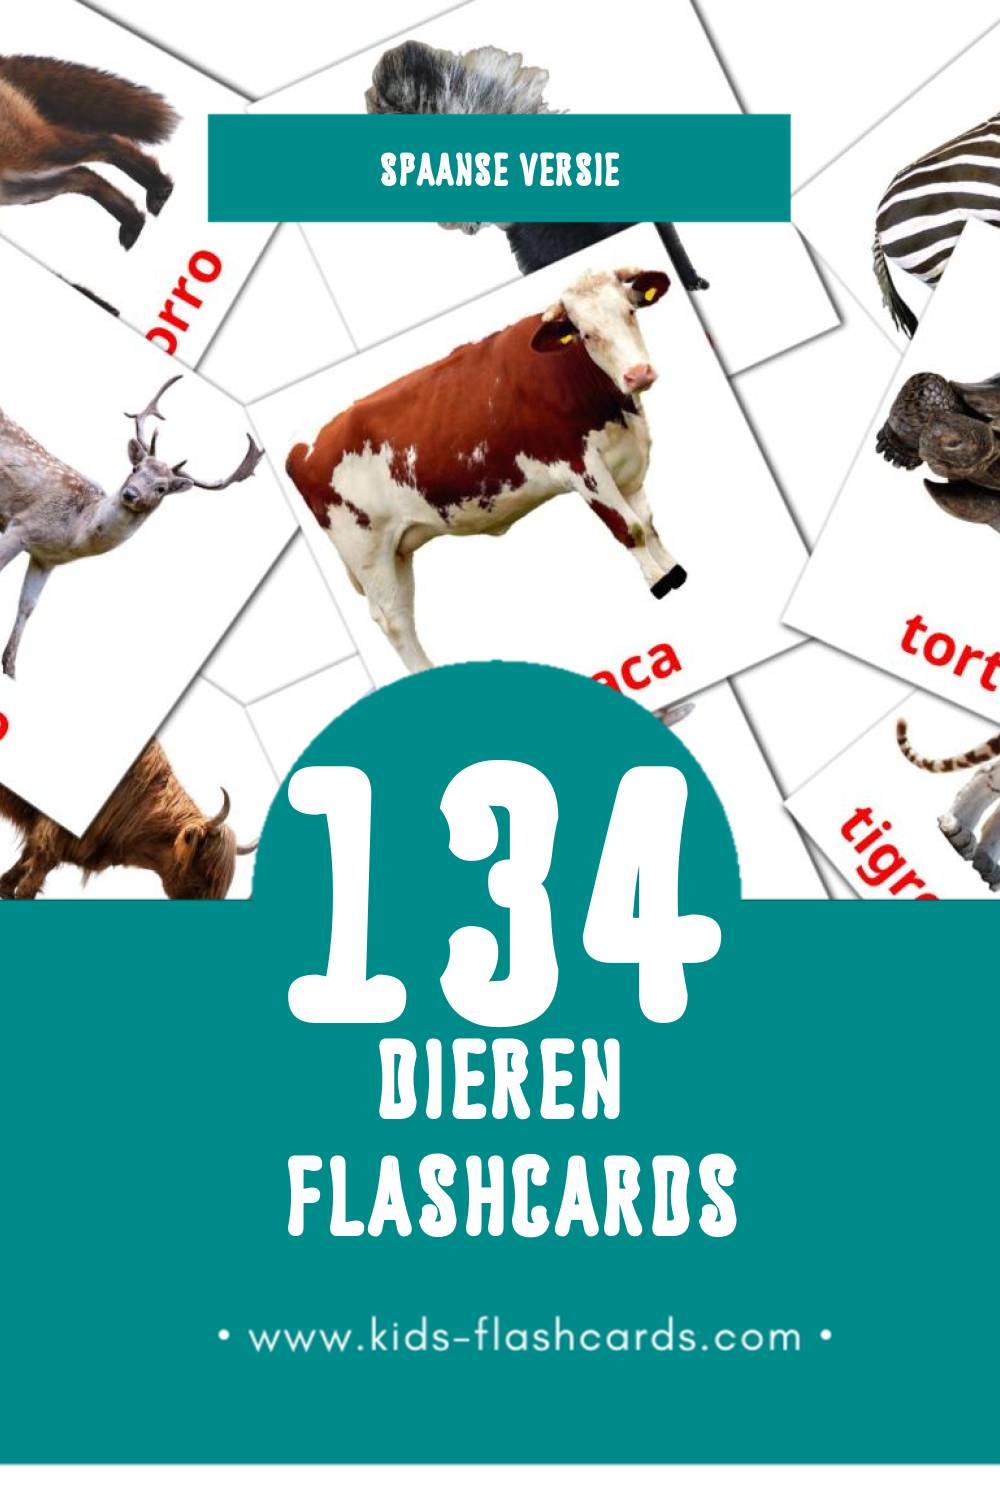 Visuele Animales Flashcards voor Kleuters (134 kaarten in het Spaans)